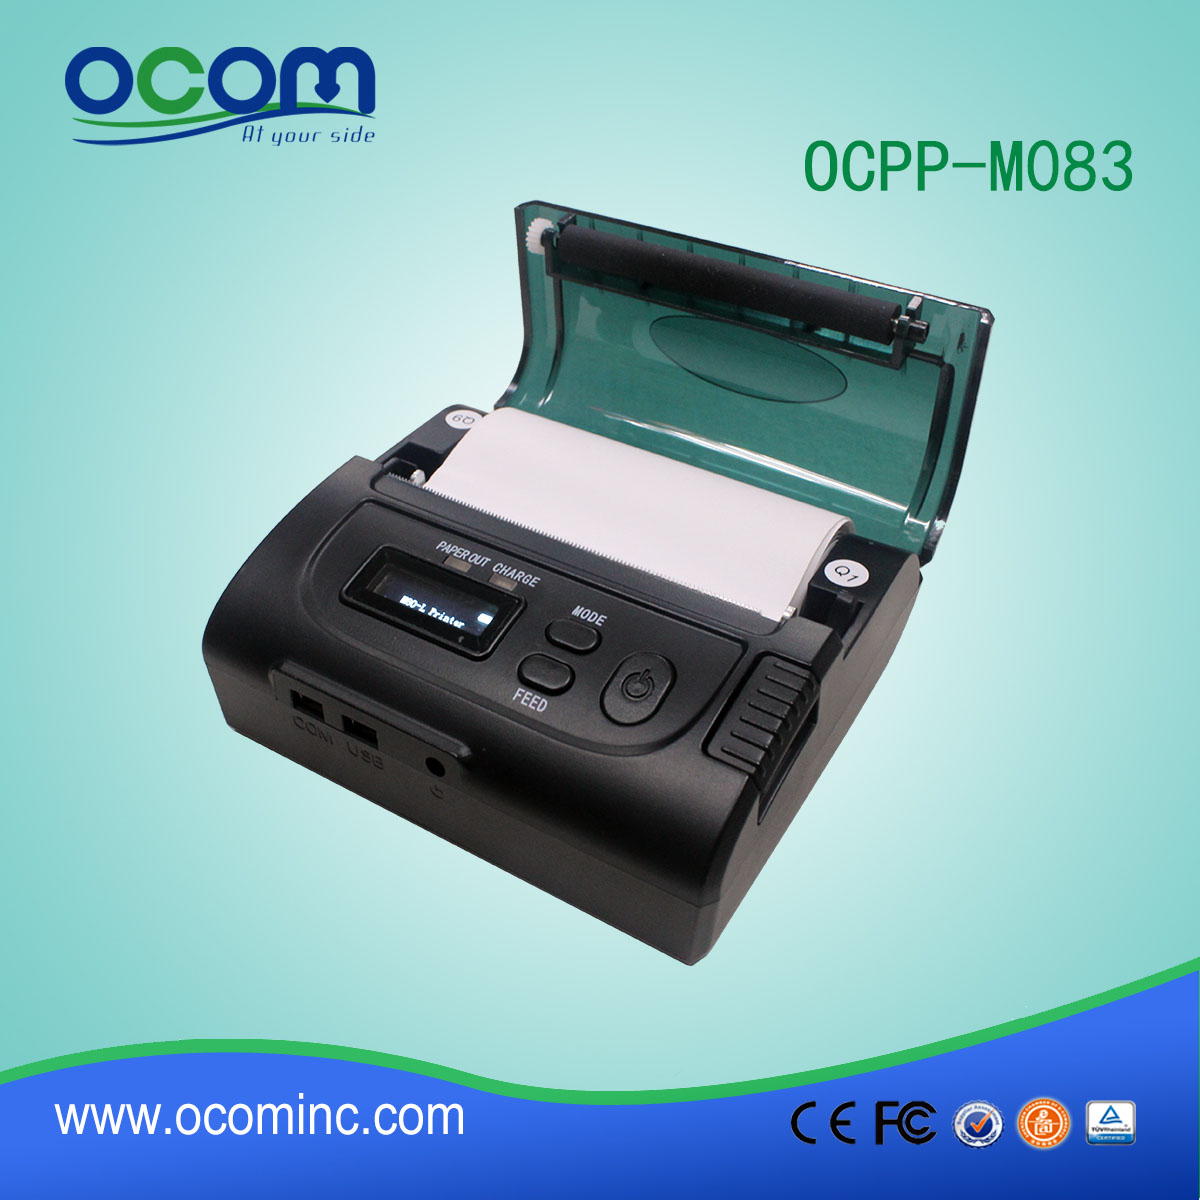 Κινητό Pos θερμικό εκτυπωτή Απόδειξη για το σύστημα Ταξί OCPP-M083